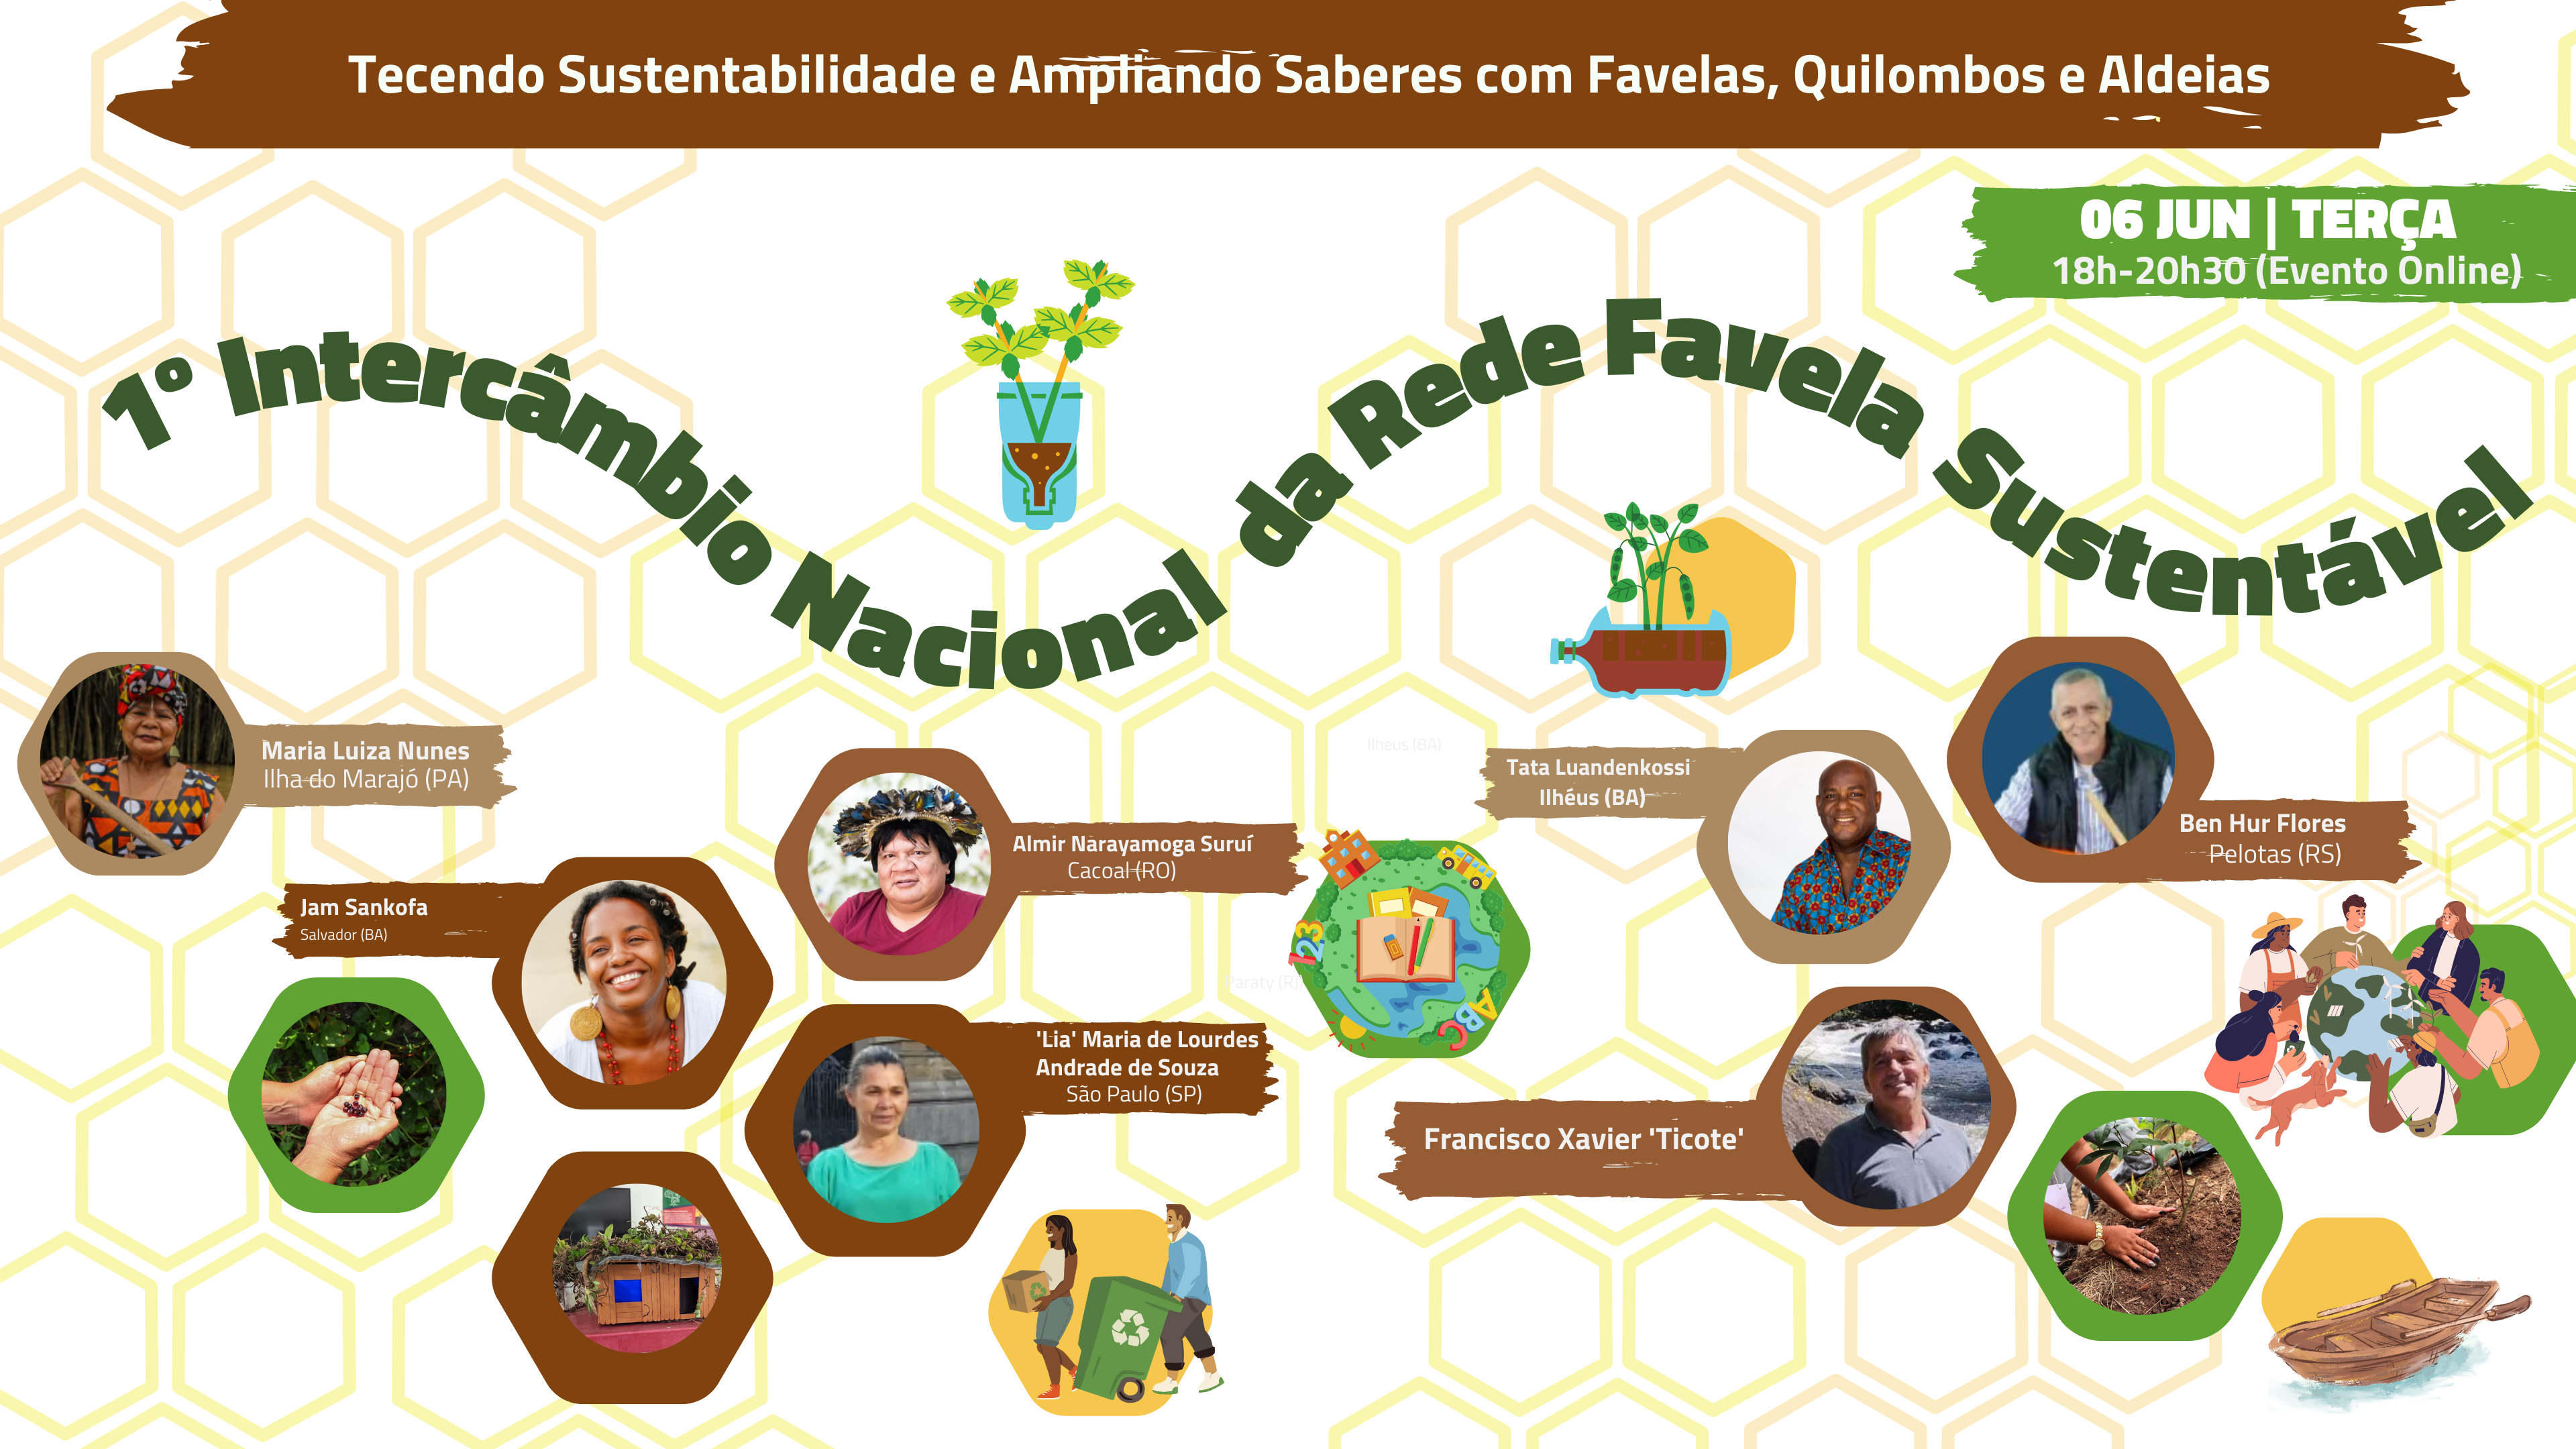 1º Intercâmbio Nacional da Rede Favela Sustentável Tecendo Sustentabilidade e Ampliando Saberes com Favelas, Quilombos e Aldeias.